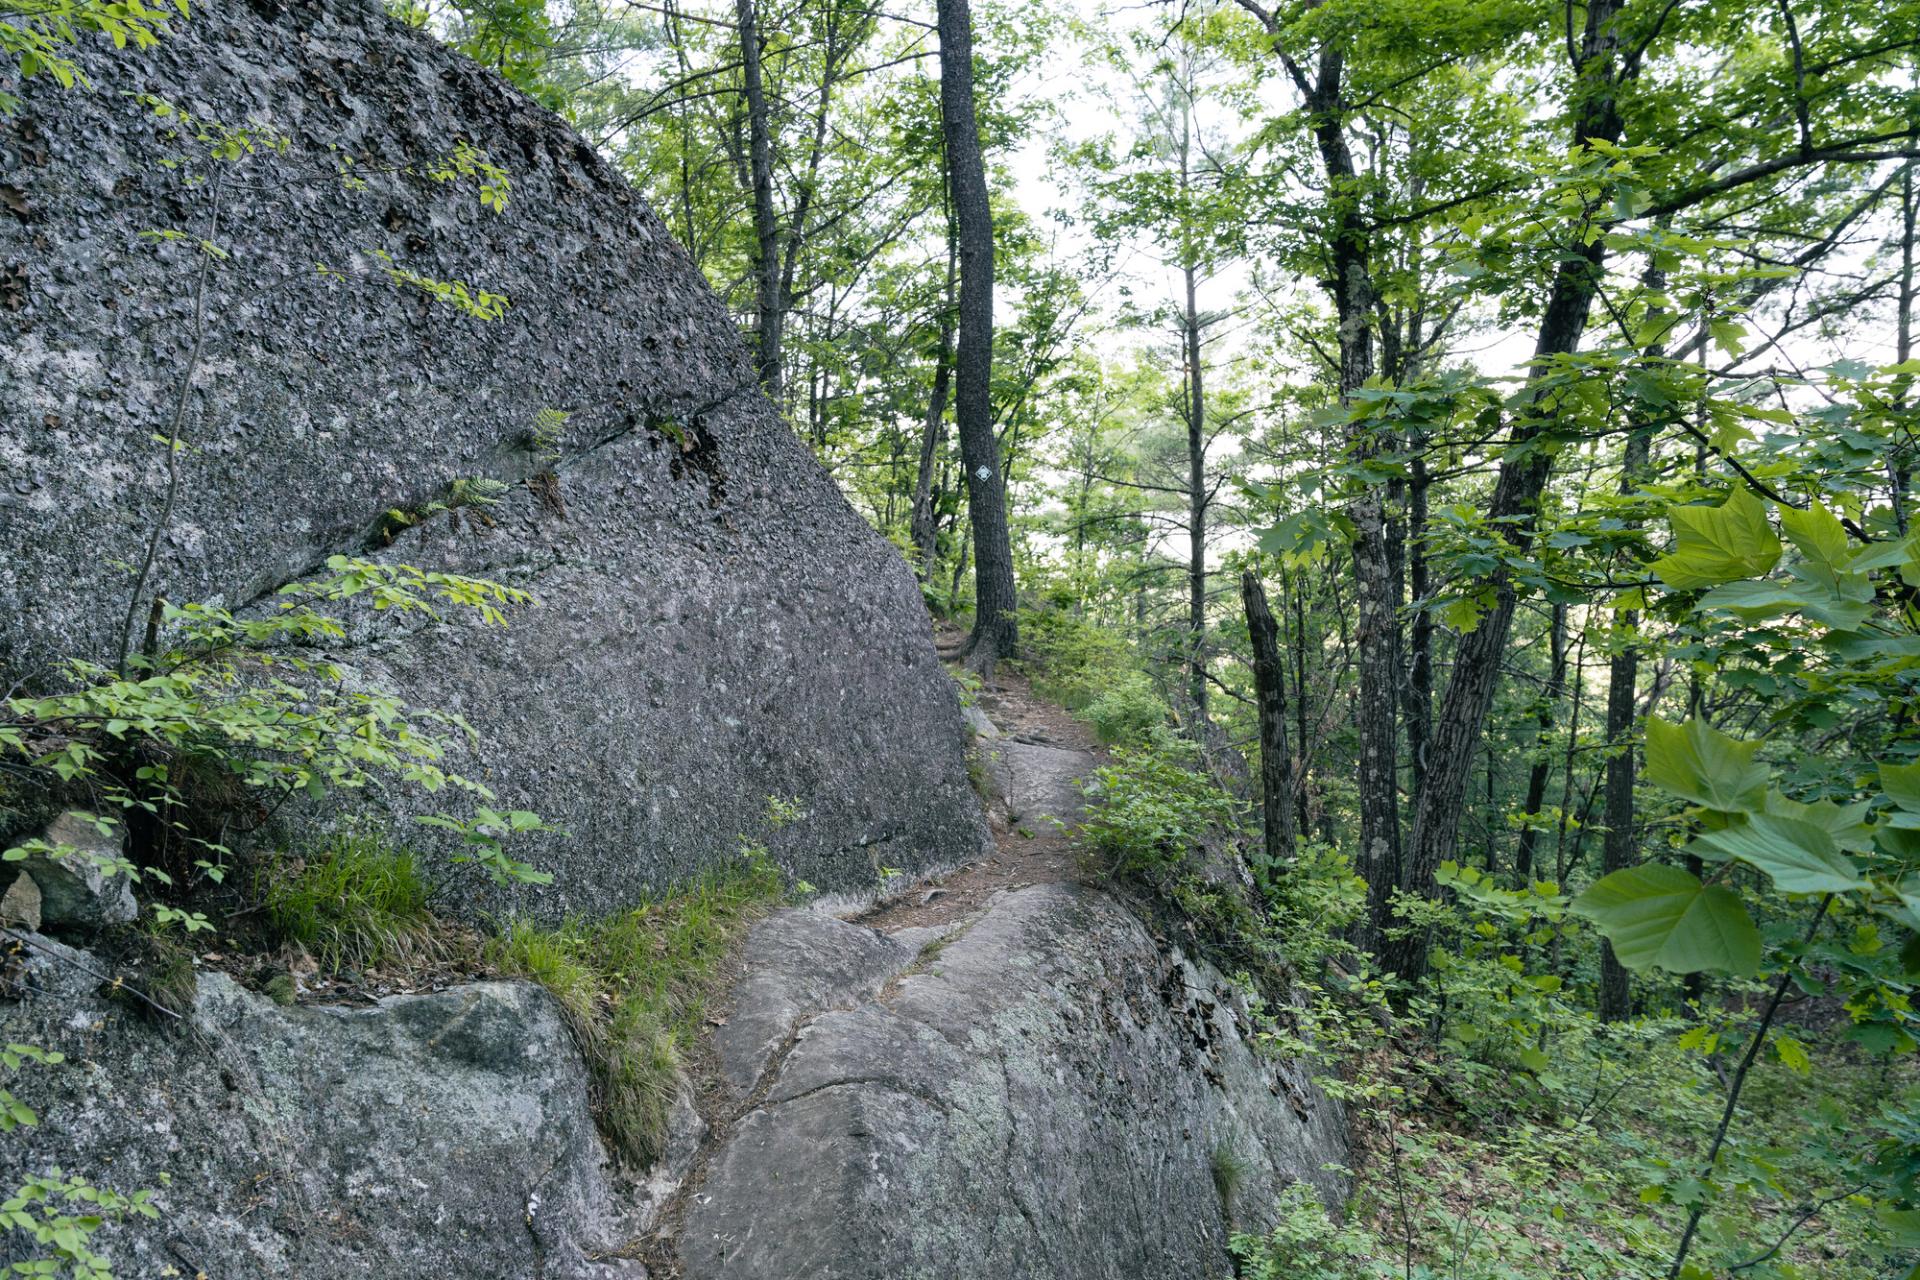 A trail winds around a slabby rock